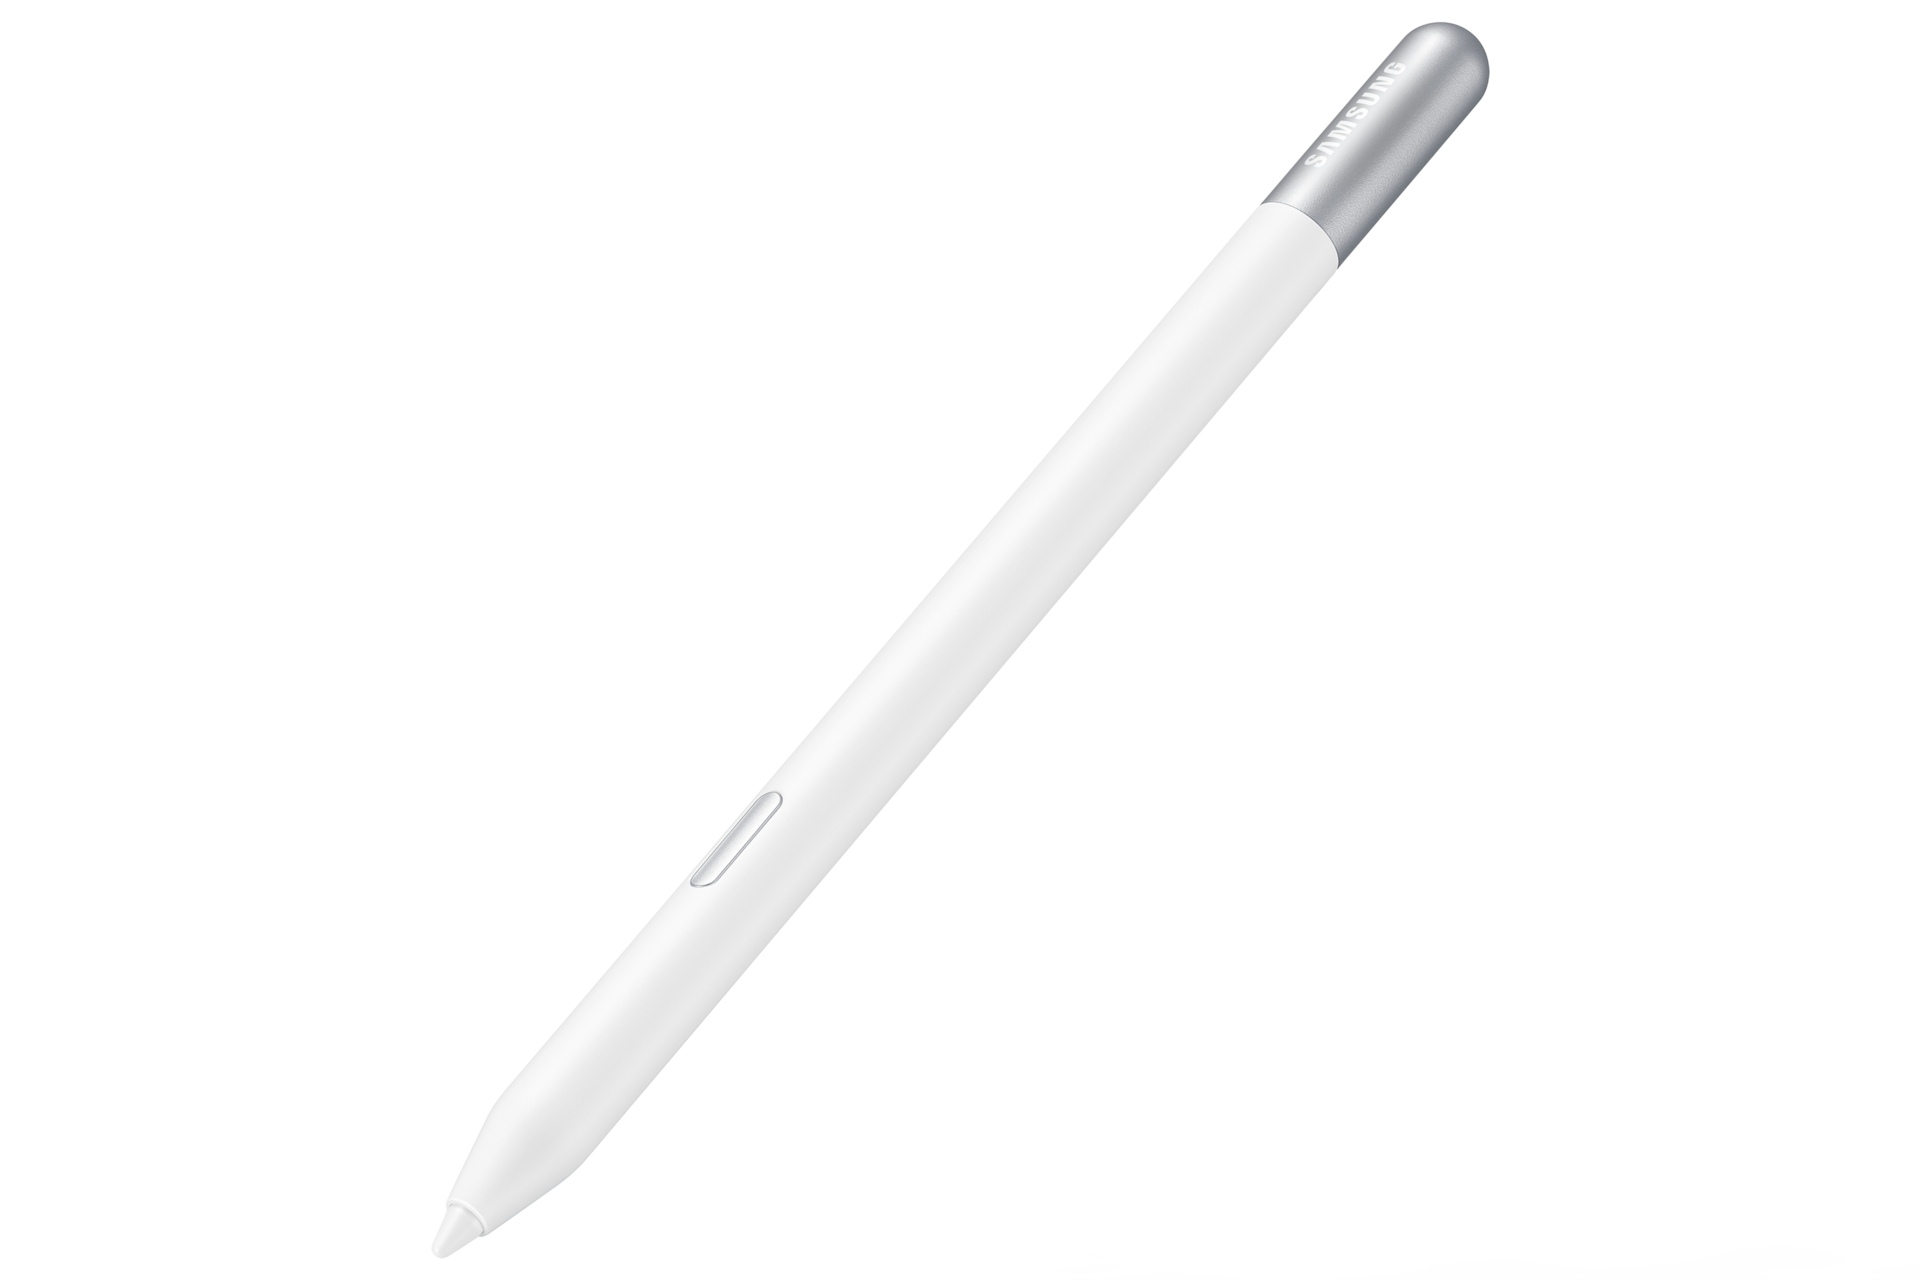 Galaxy S Pen Creator Edition, White